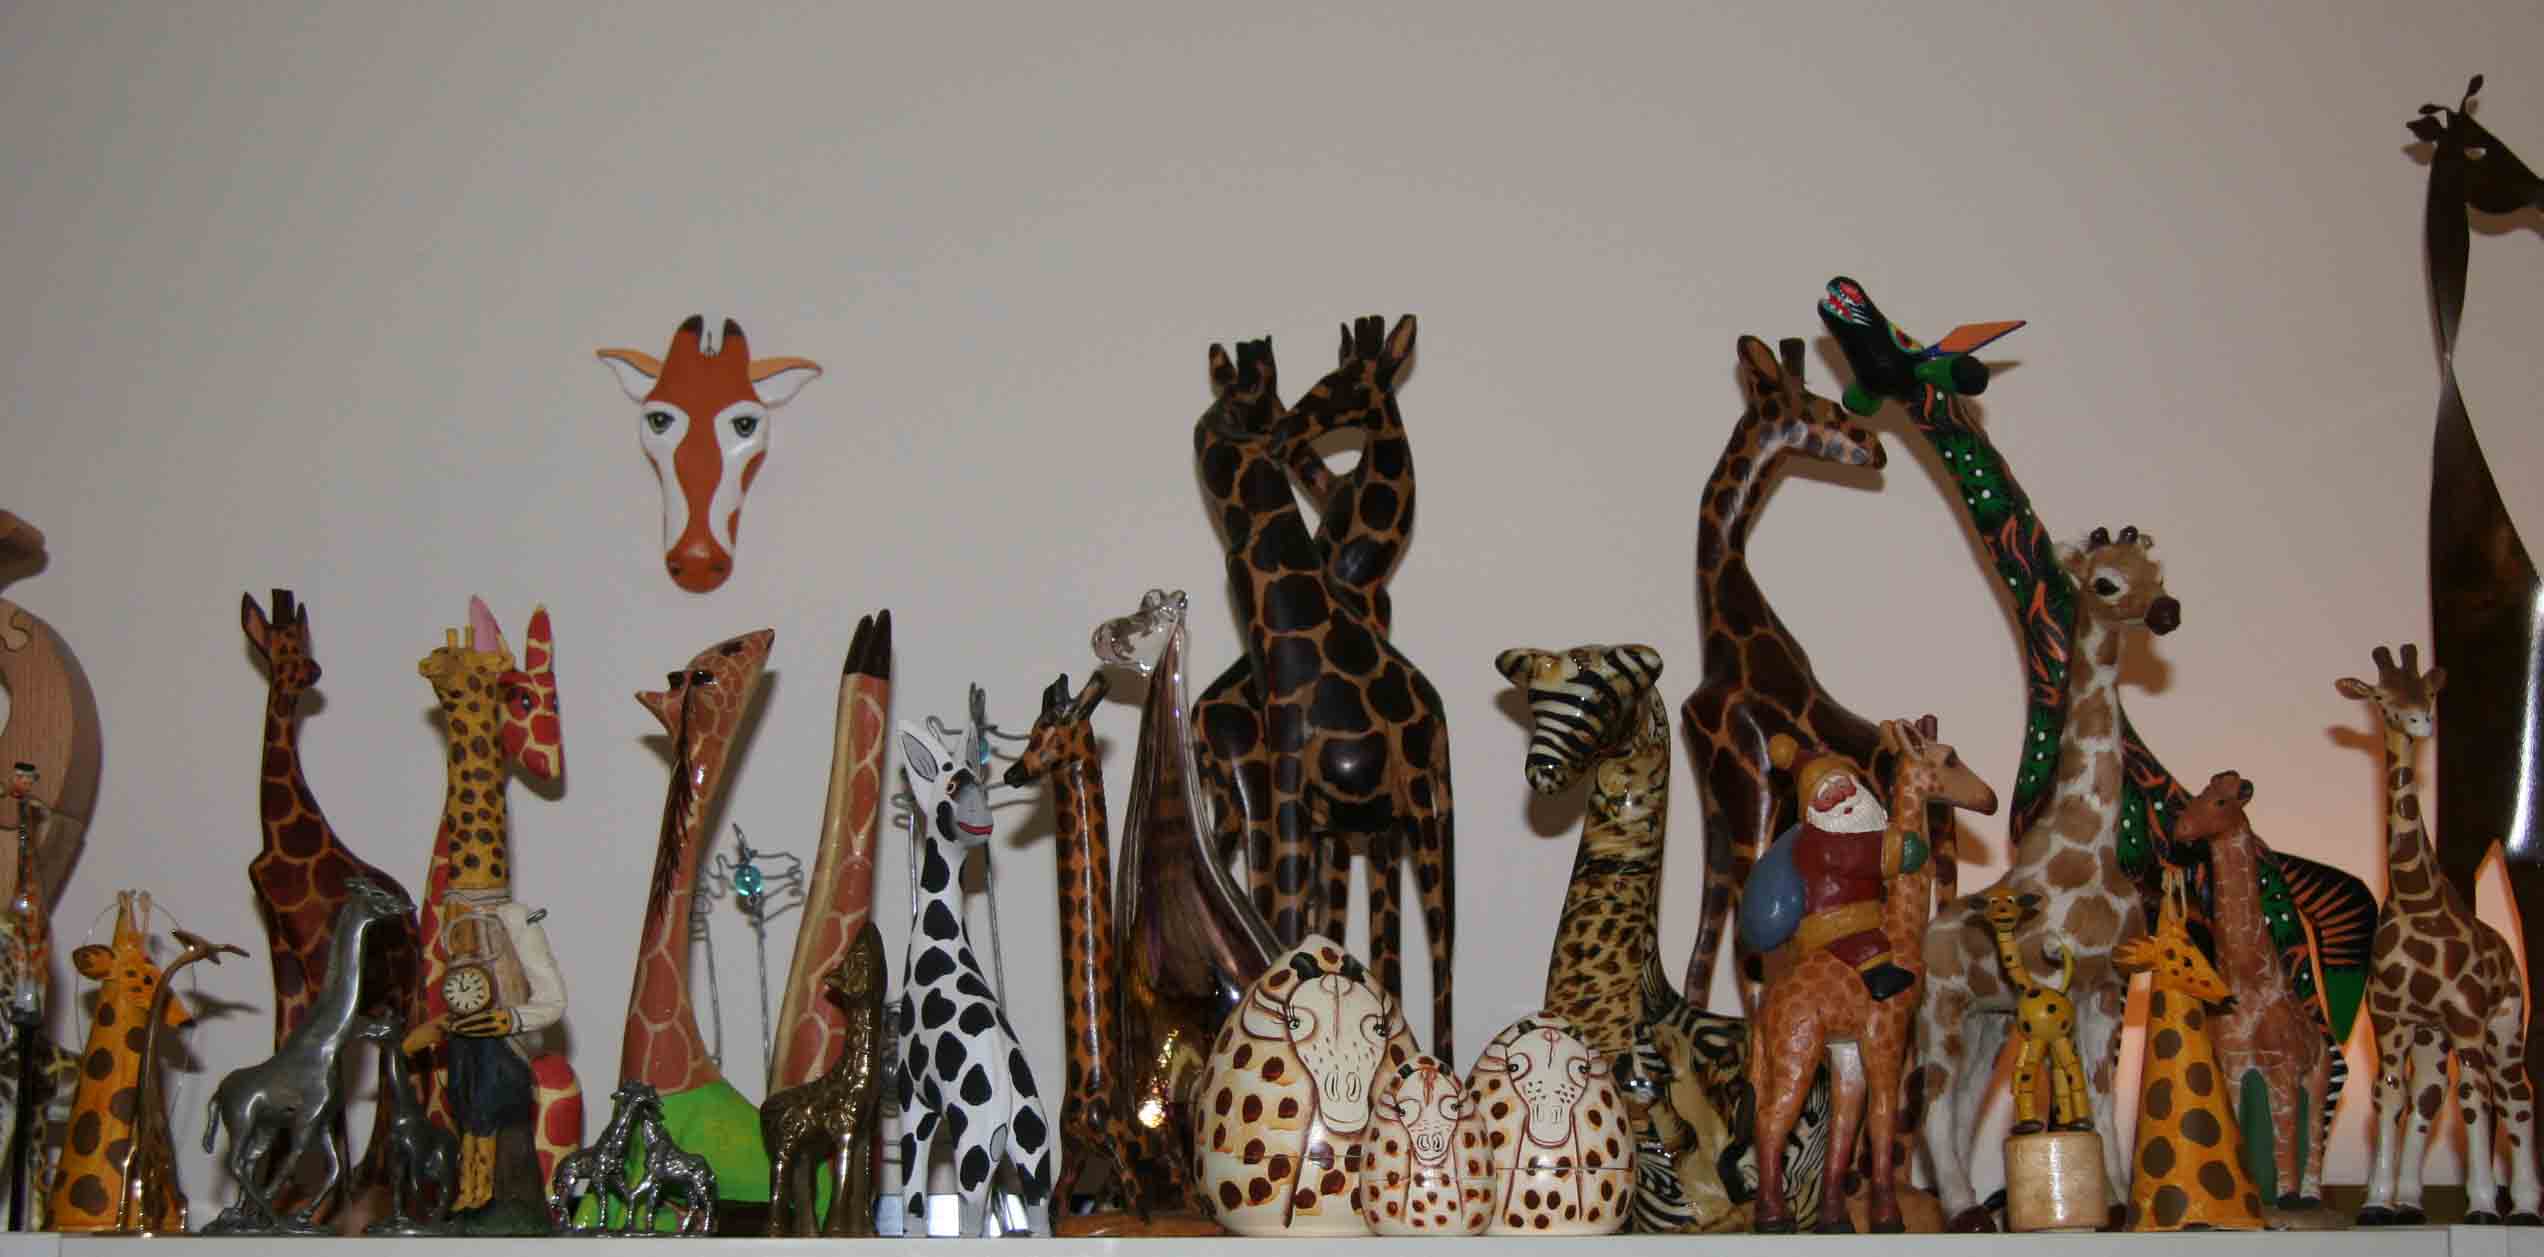 still more giraffes